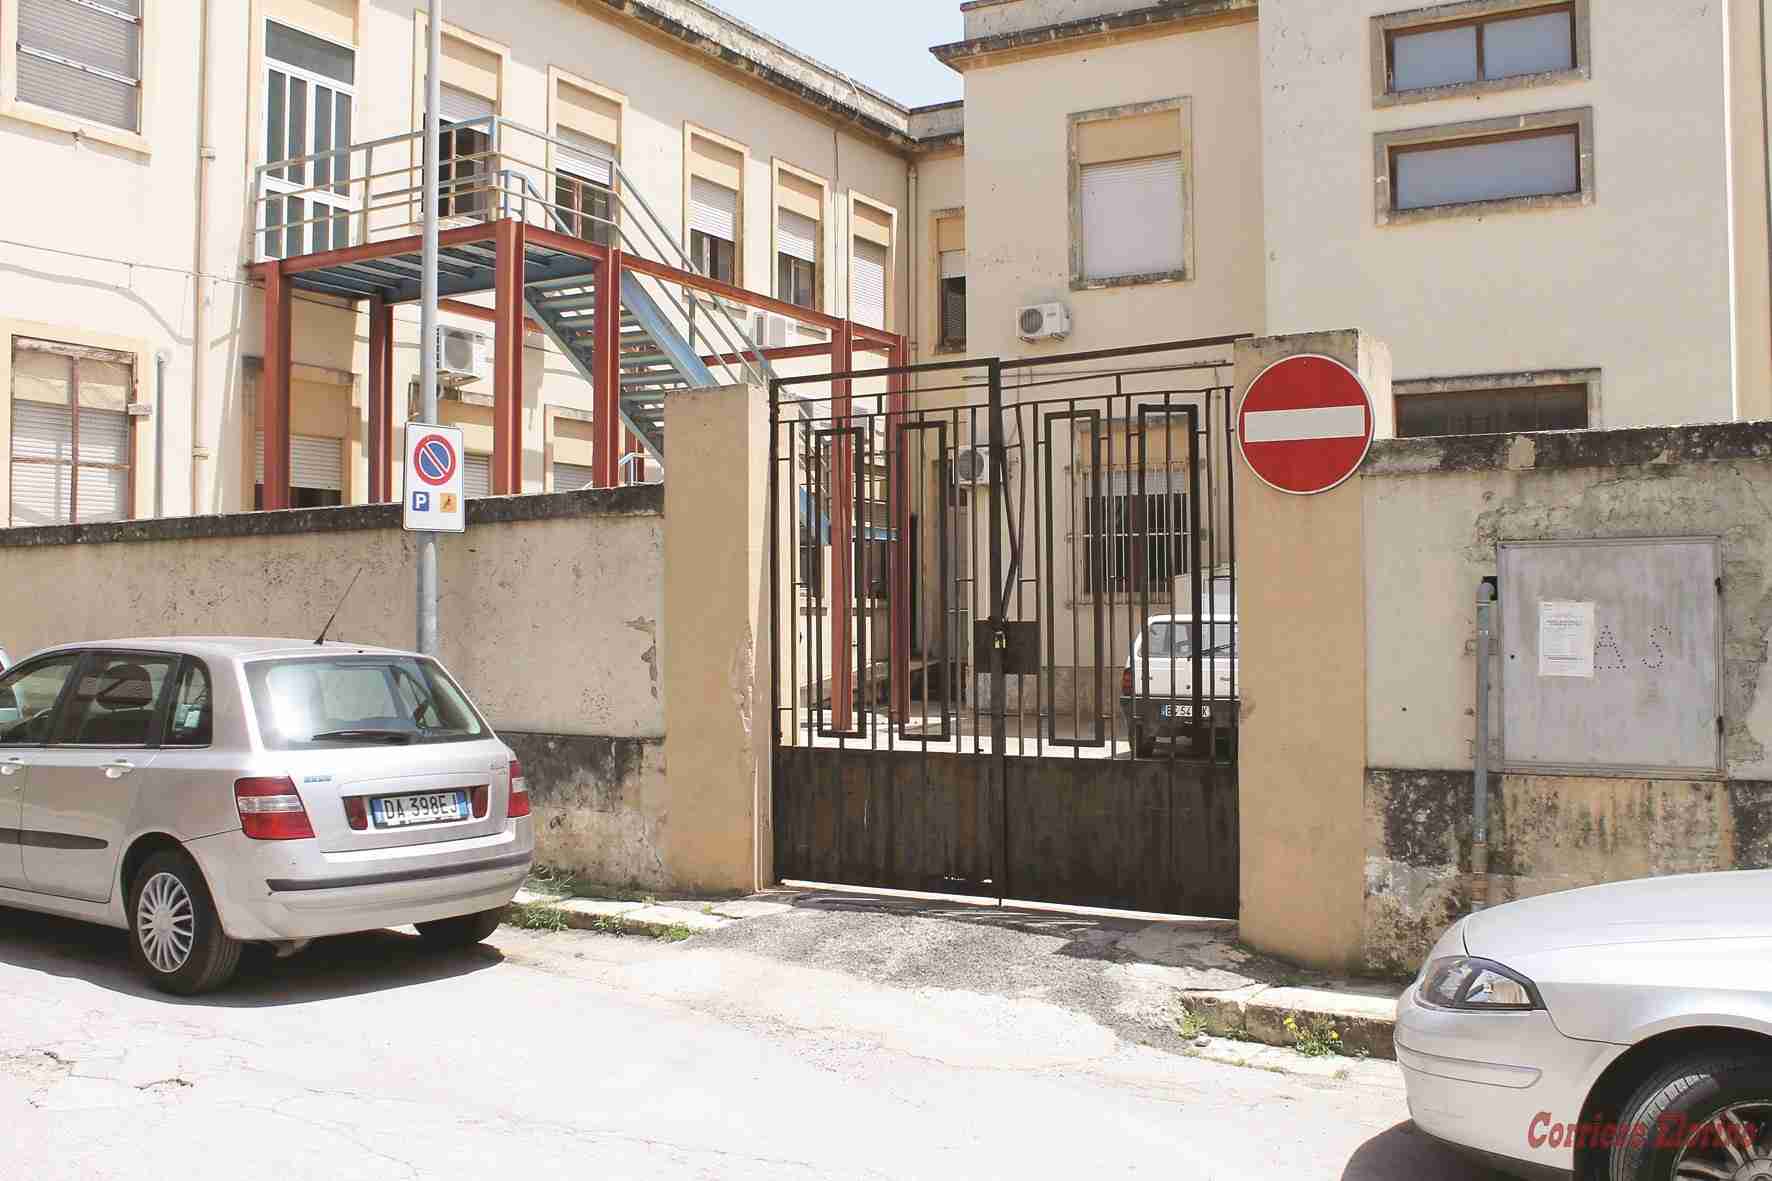 Cancello chiuso: uffici comunali off limits per disabili e carrozzine